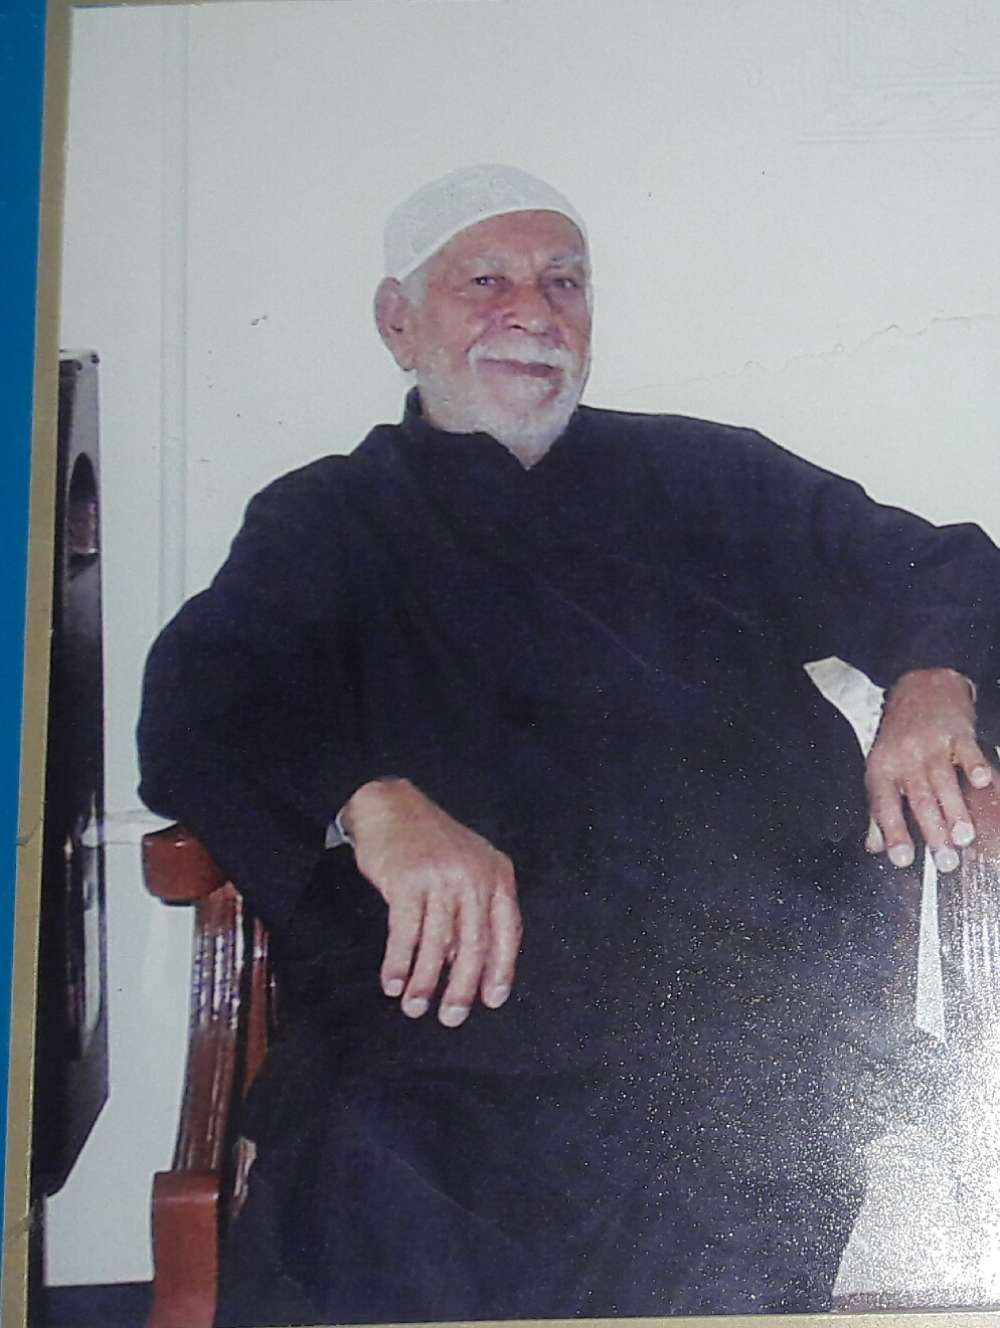  حاج حسن پورکاویان